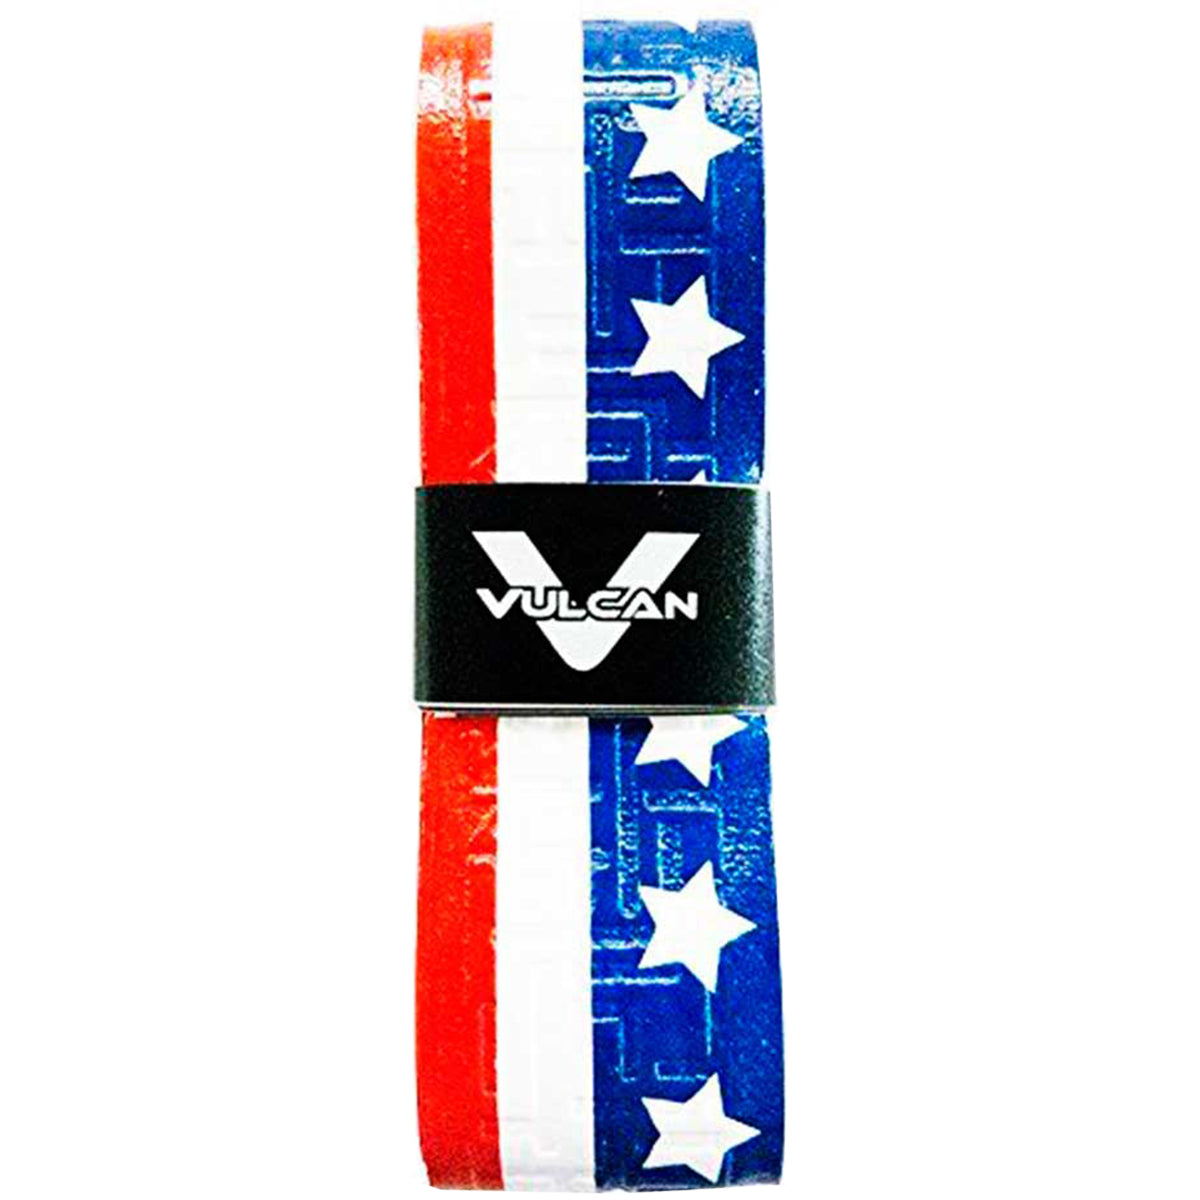 Vulcan USA Series 1.75mm Ultralight Advanced Polymer Bat Grip Tape Wrap Vulcan